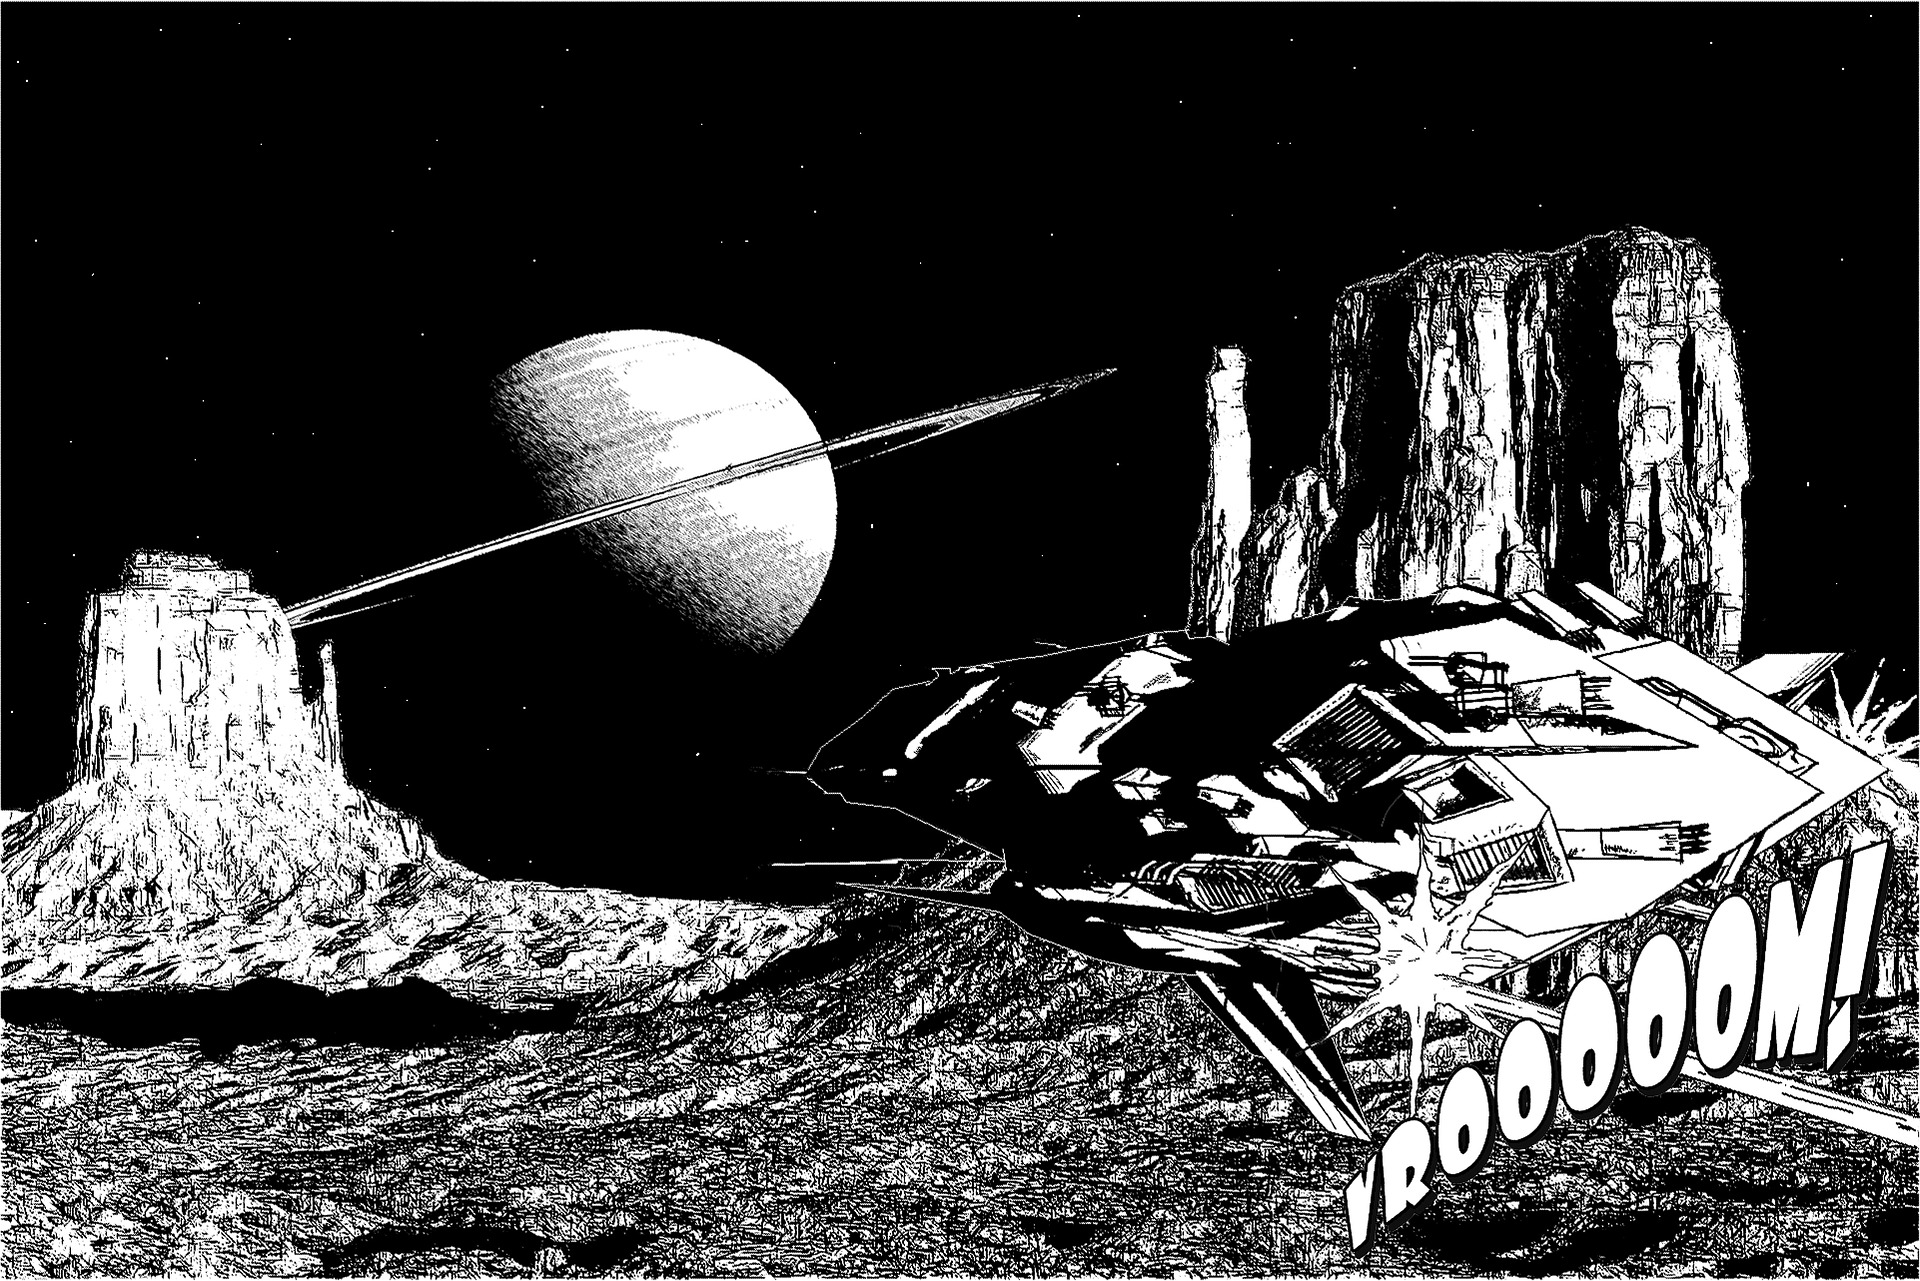 lunar-landscape-804147_1920.jpg